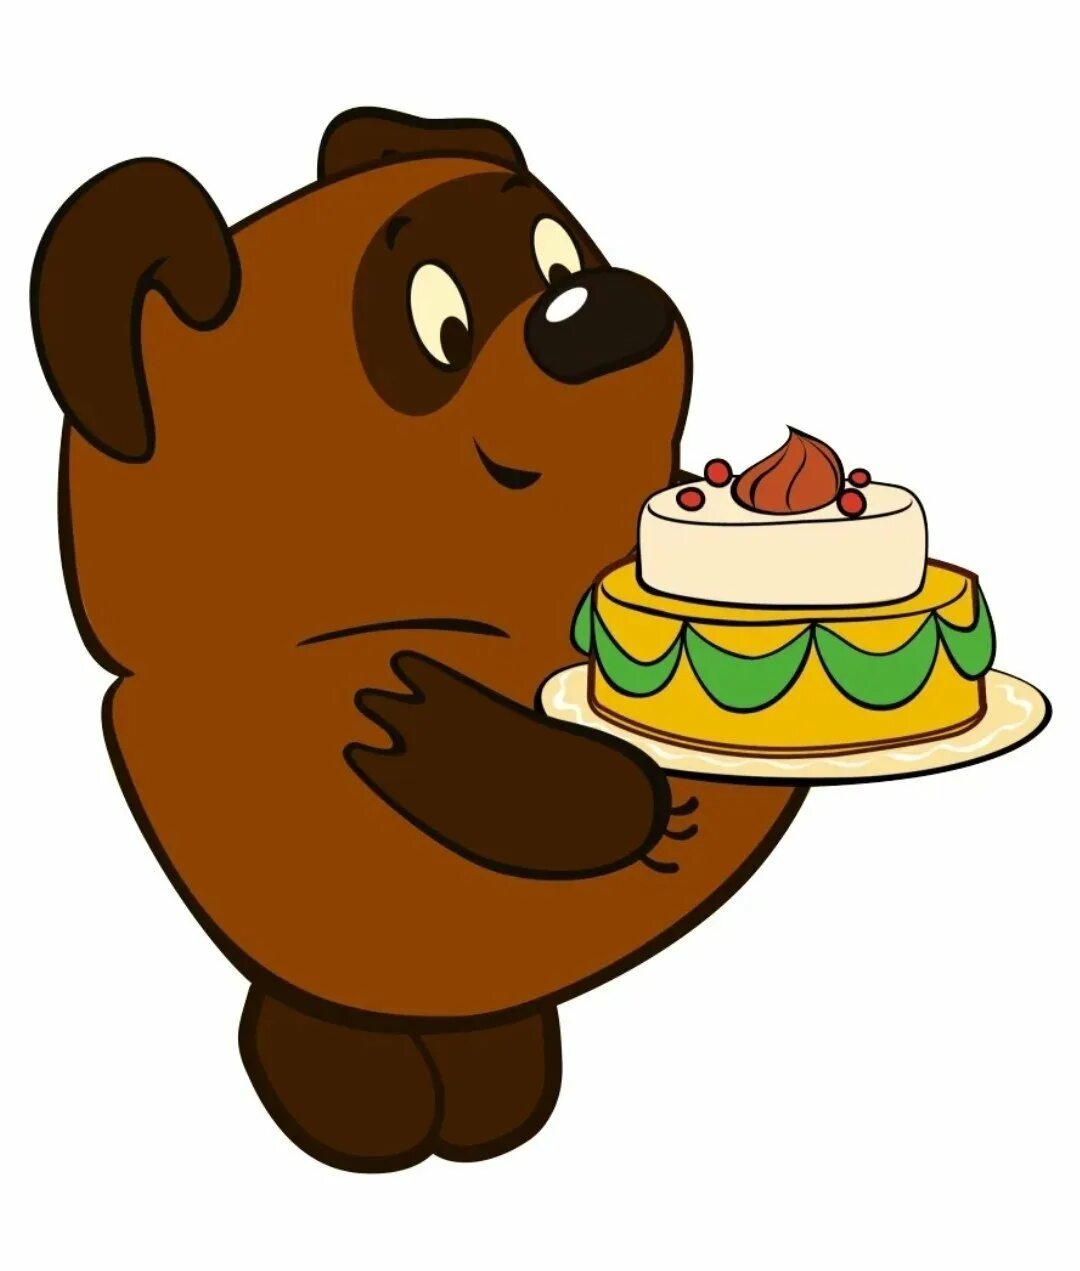 Торт винипух. С днем рождения Винни пух. С днем рождения мультяшки. Тортики из мультиков. Винни пух день рождения